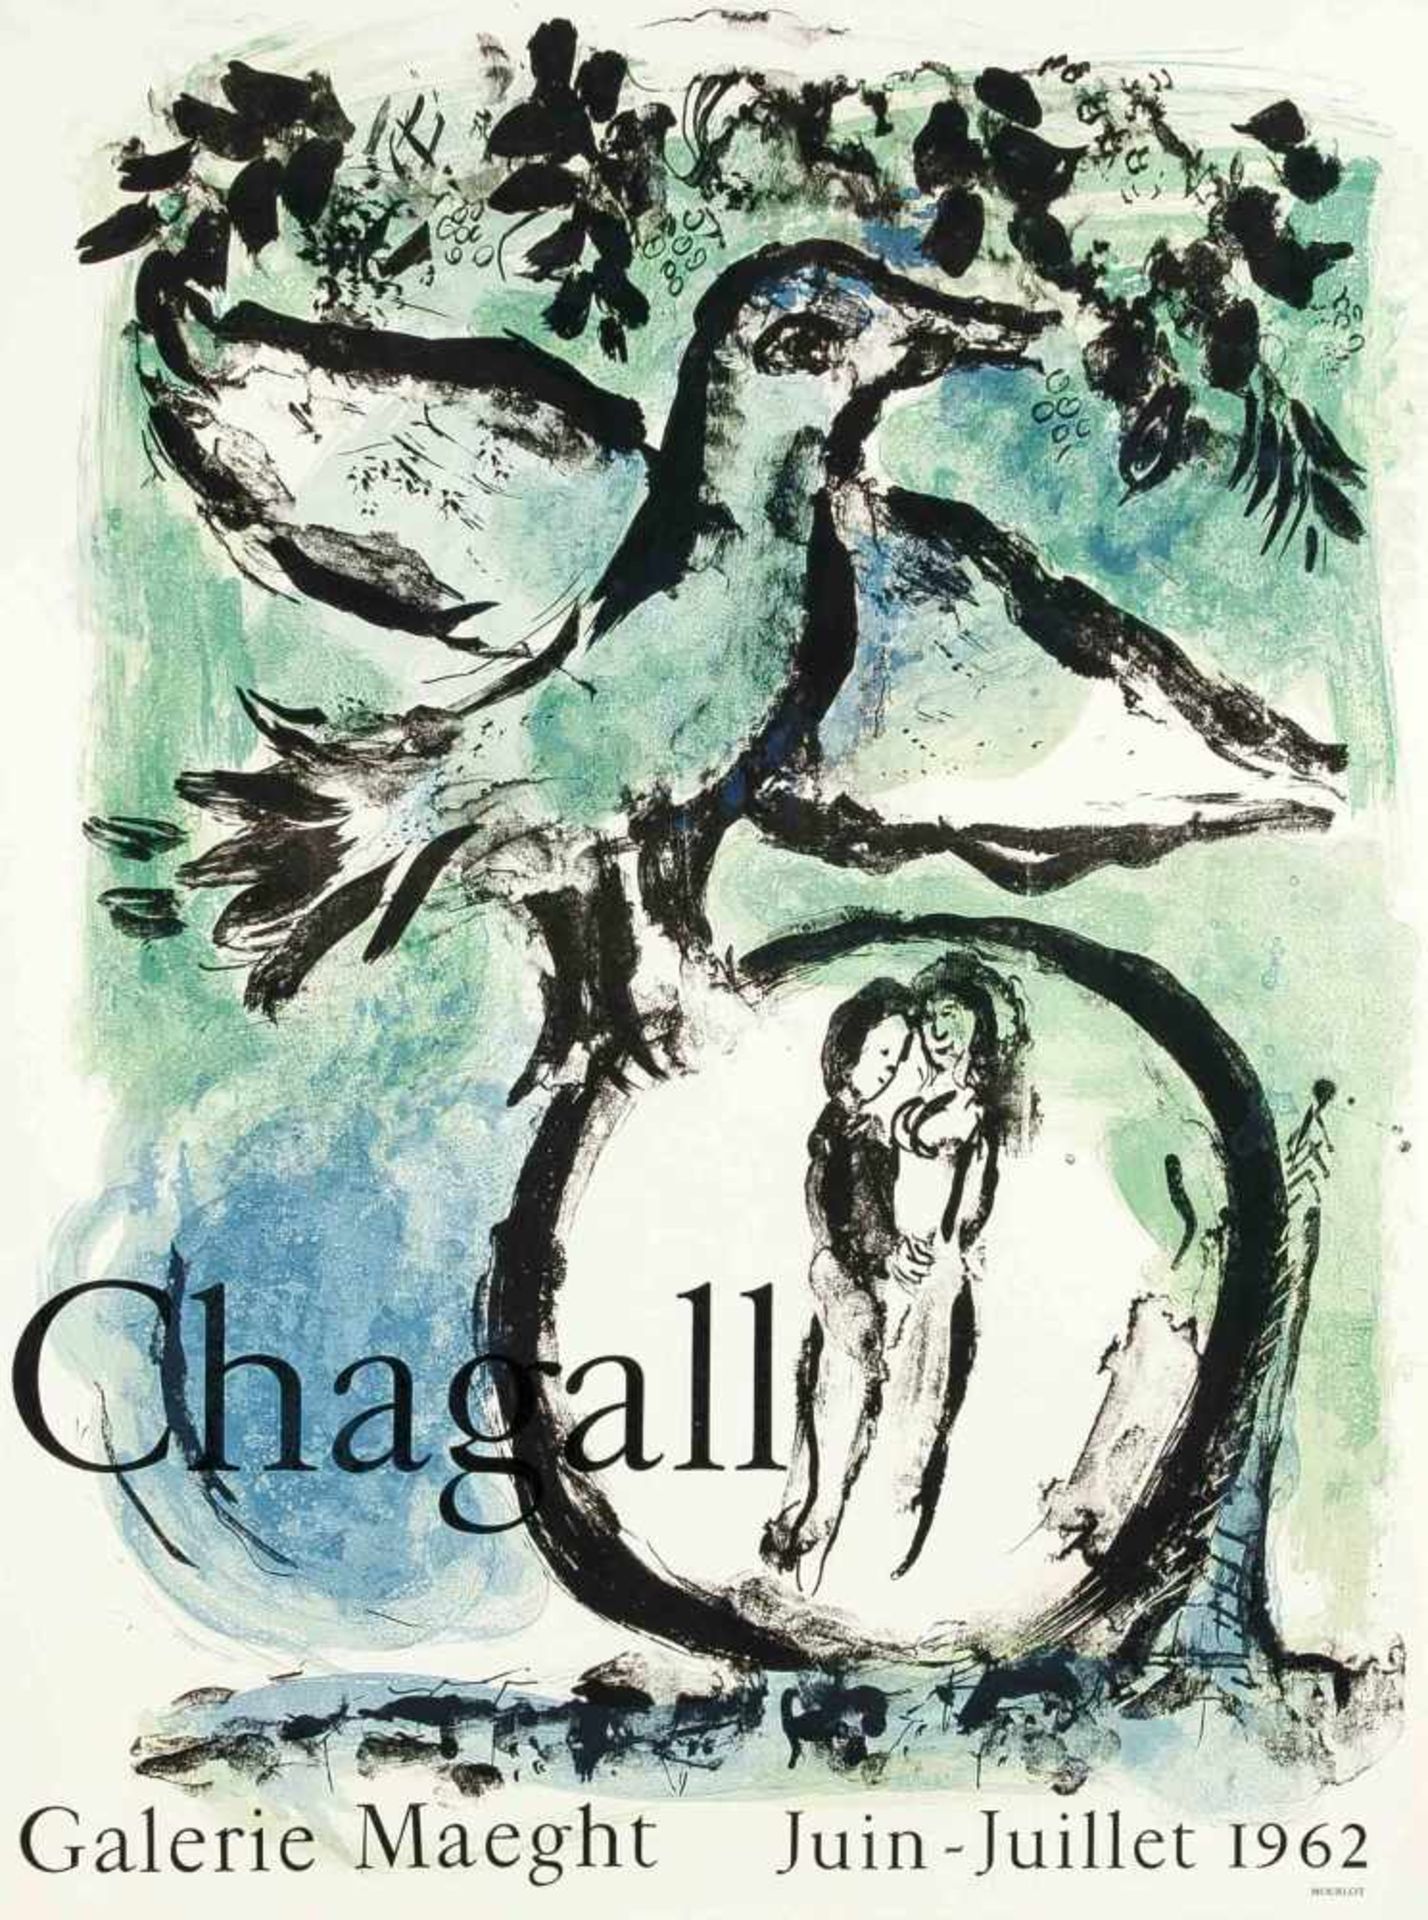 Marc Chagall (1887-1985), "L'Oiseau vert", Farblithografie, Ausstellungsplakat der GalerieMaeght,